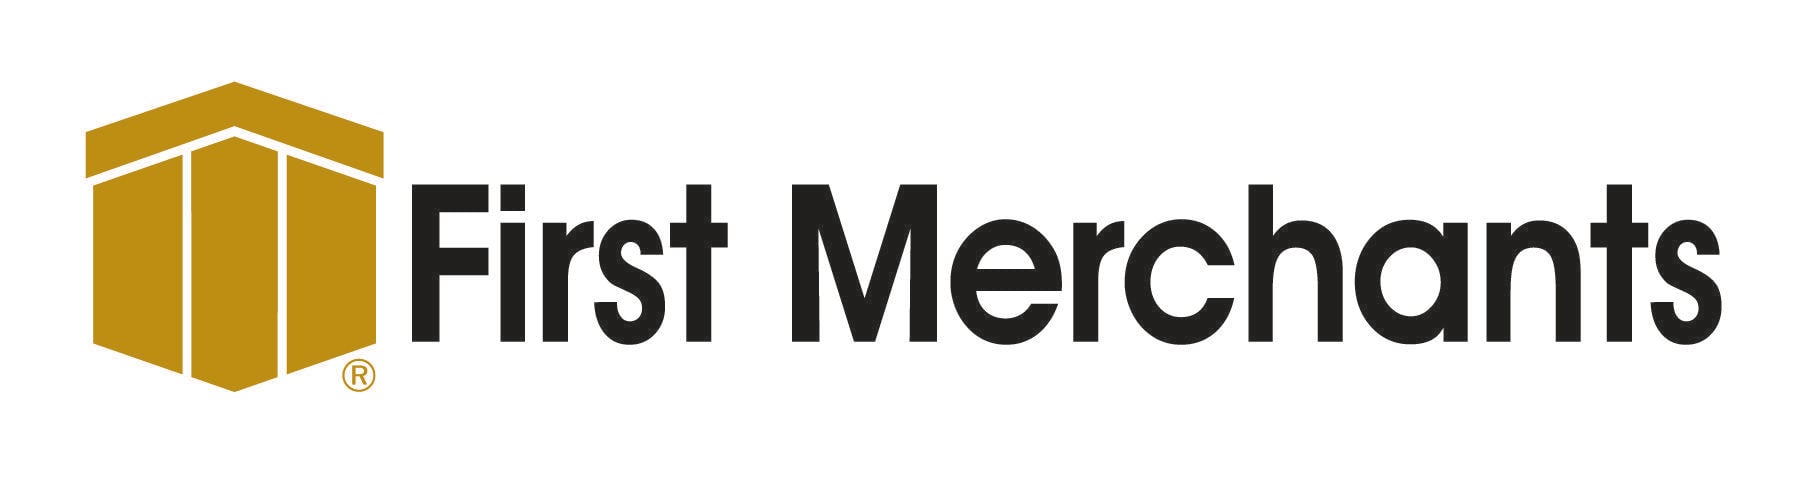 Merchant Logo - First Merchants Bank